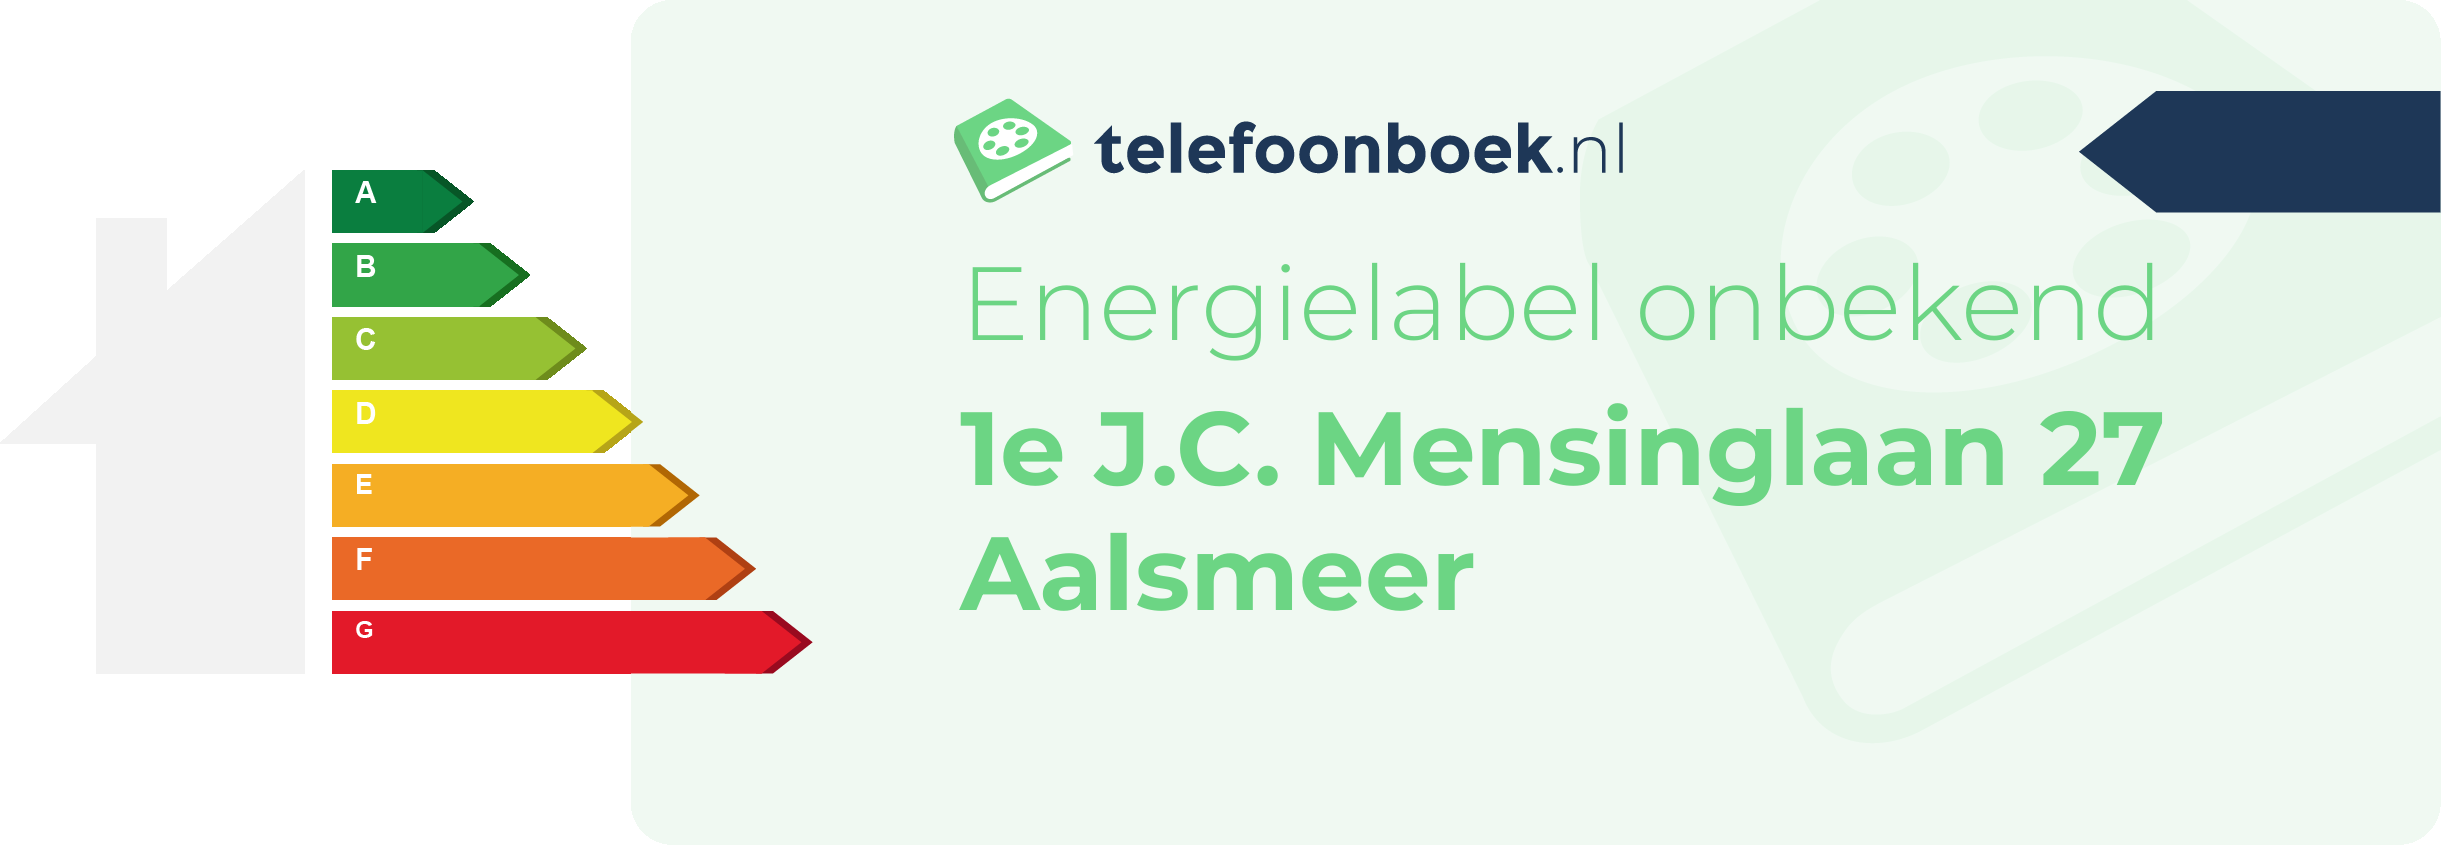 Energielabel 1e J.C. Mensinglaan 27 Aalsmeer